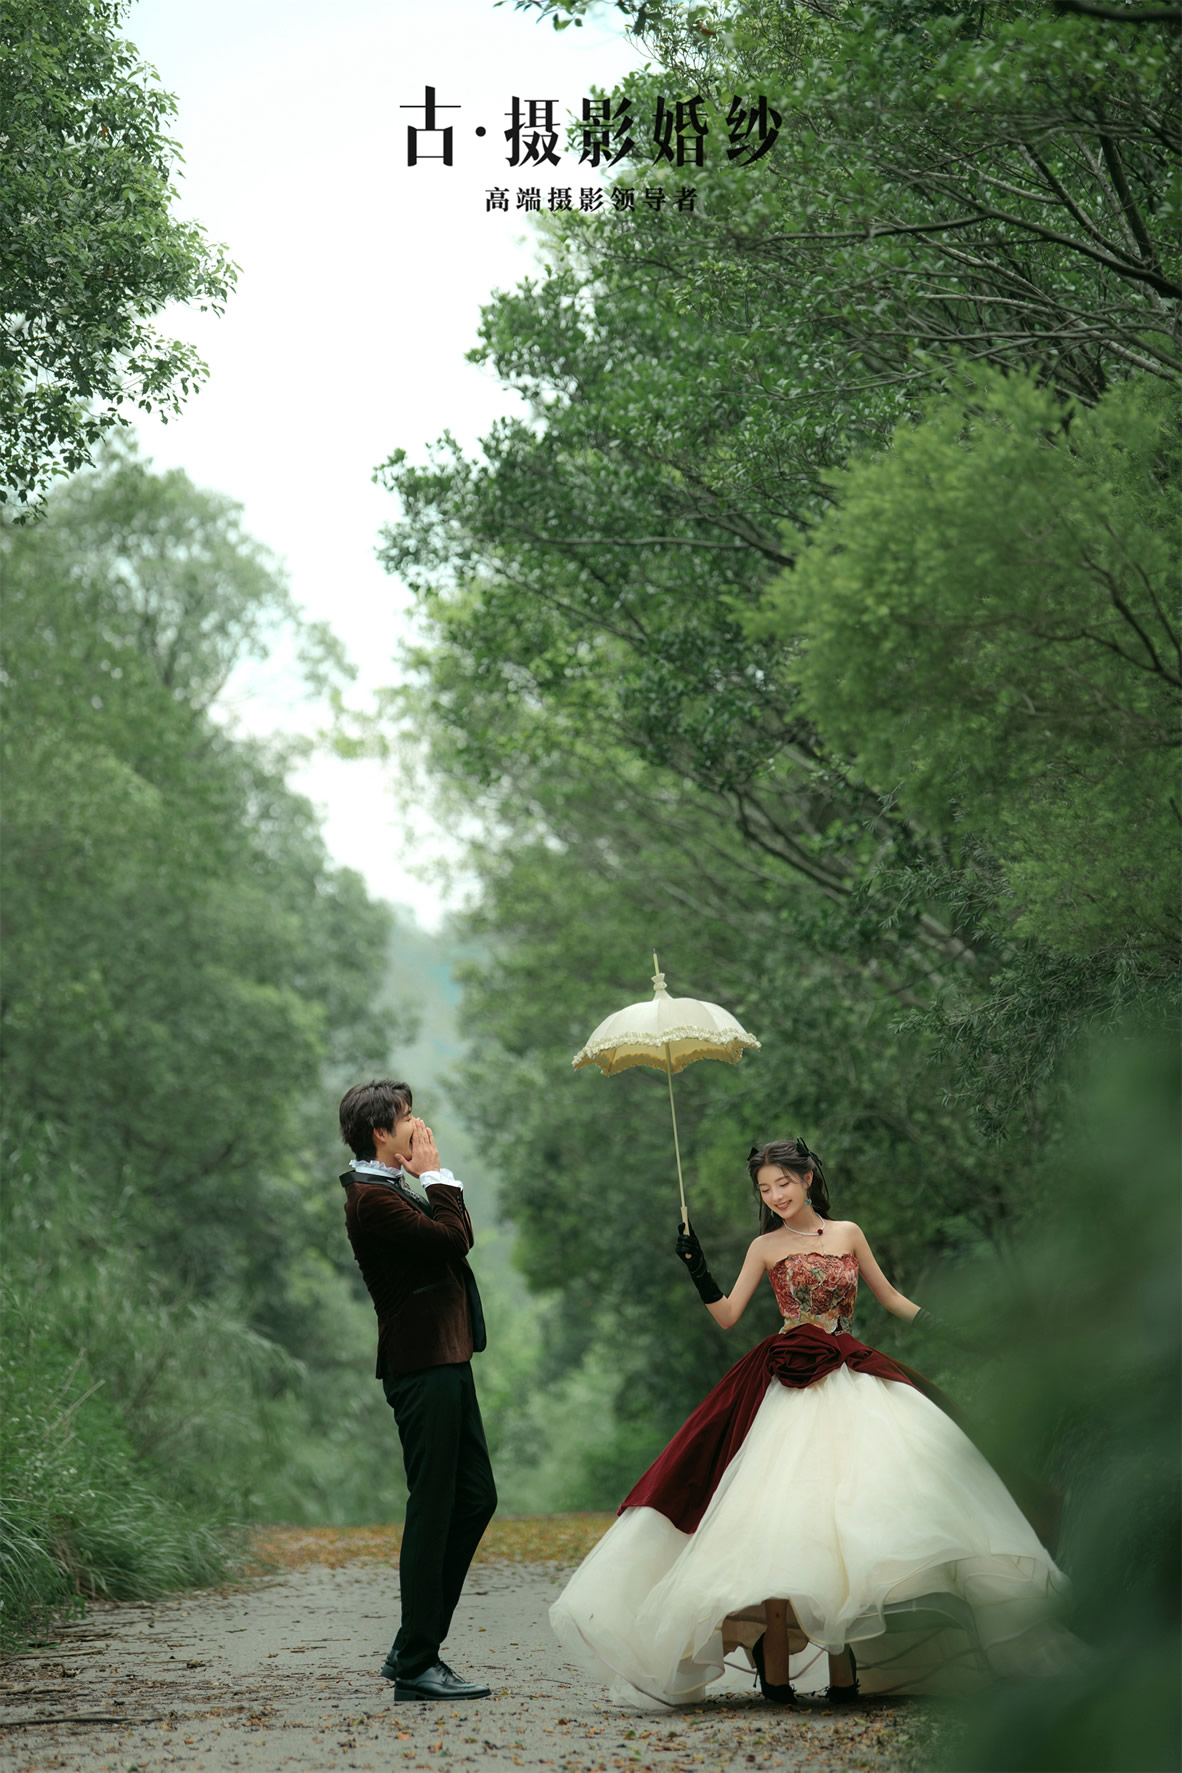 国王庄园《安妮日记》 - 拍摄地 - 广州婚纱摄影-广州古摄影官网